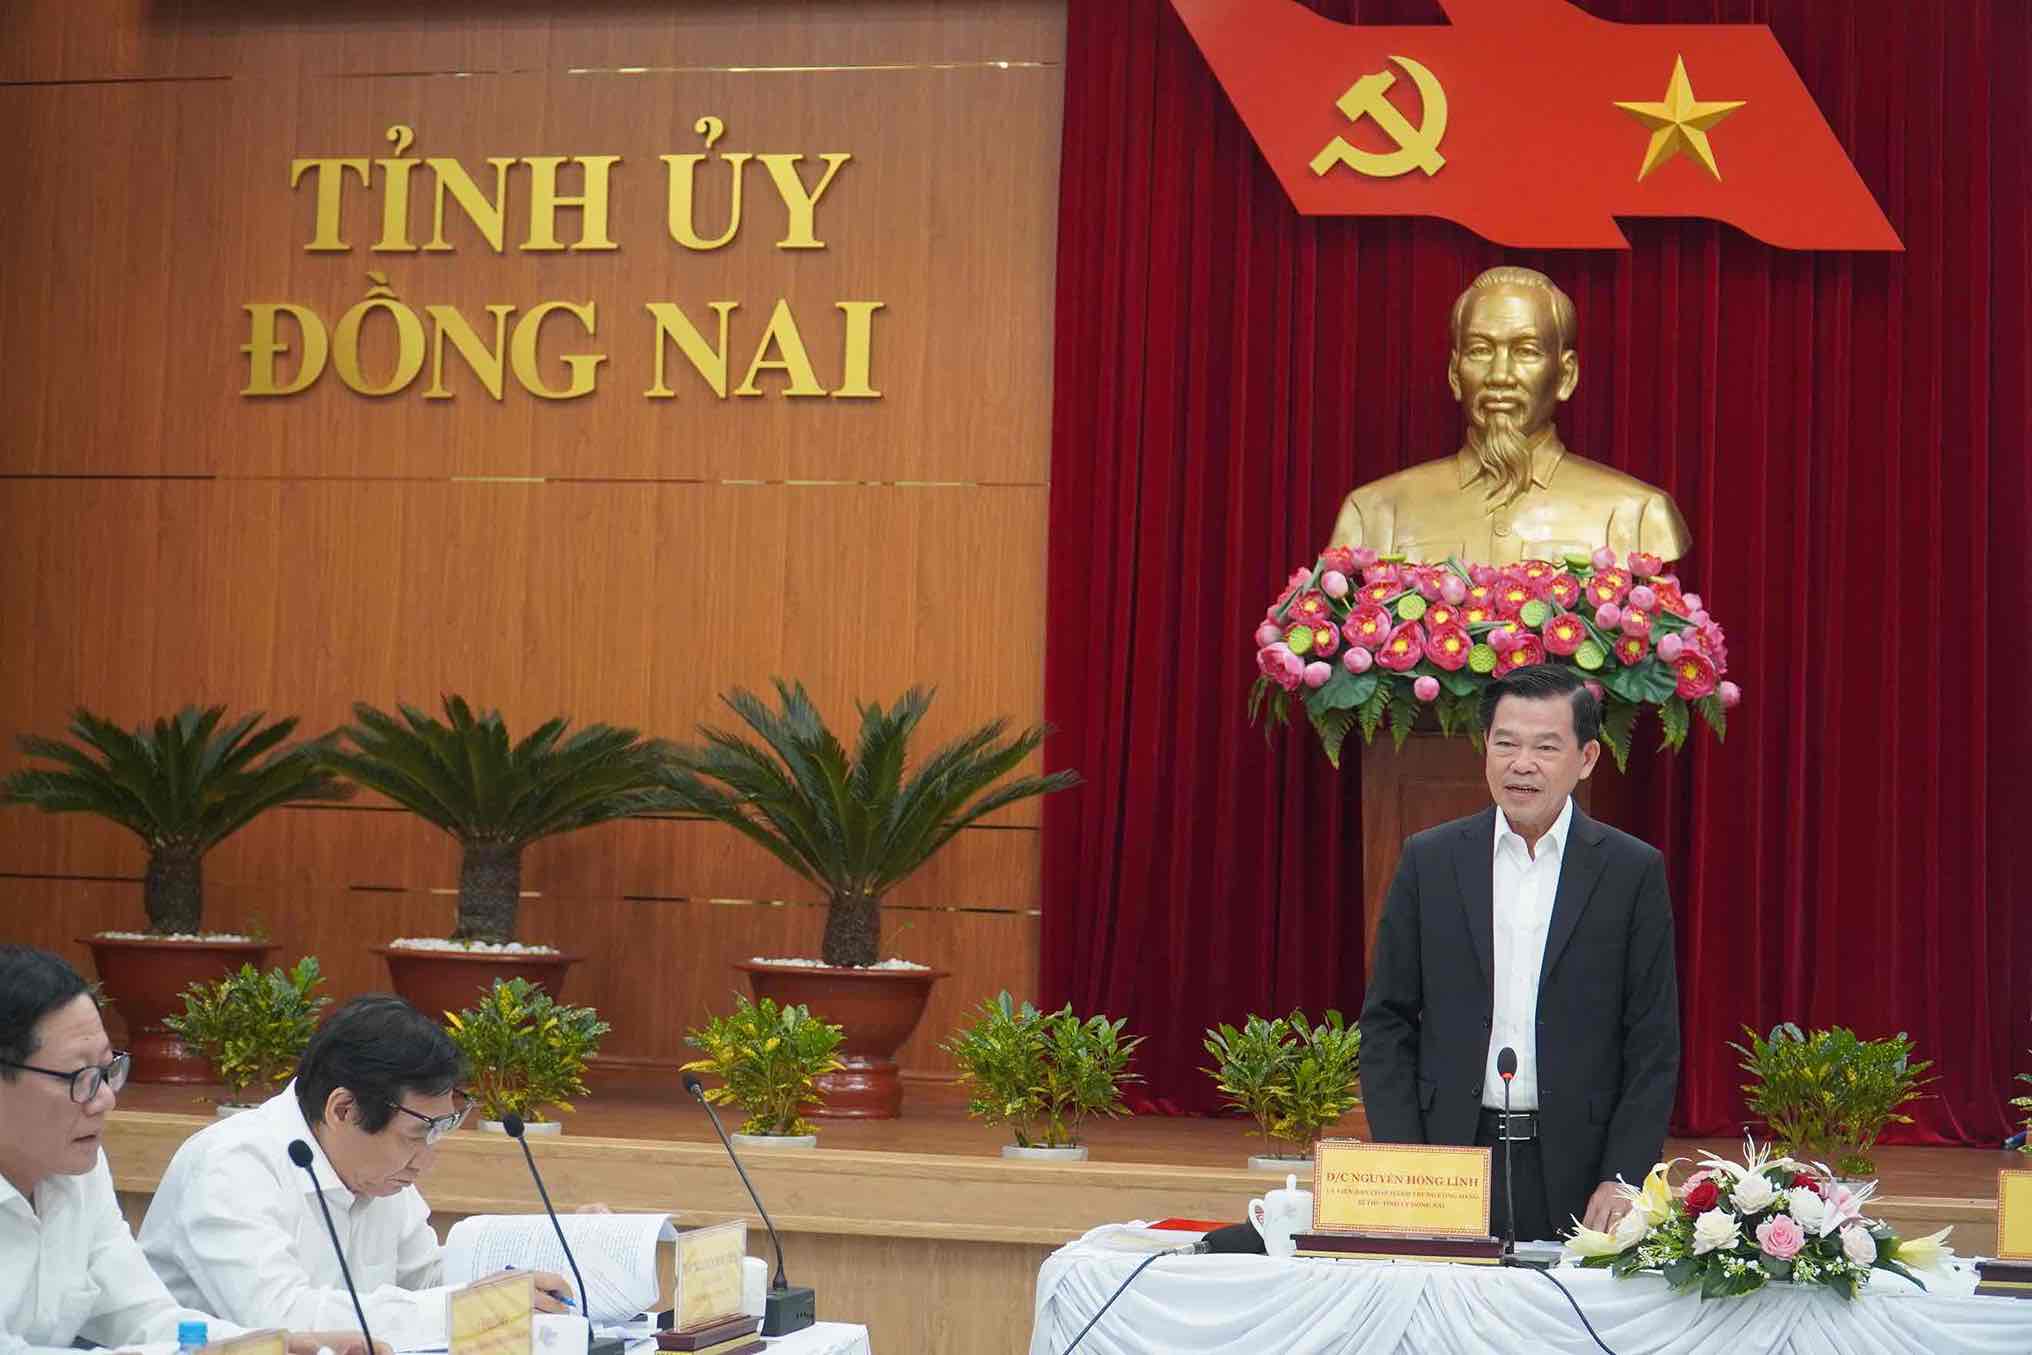  Bí thư tỉnh uỷ Đồng Nai Nguyễn Hồng Lĩnh phát biểu tại hội nghị. Ảnh: Hà Anh Chiến 